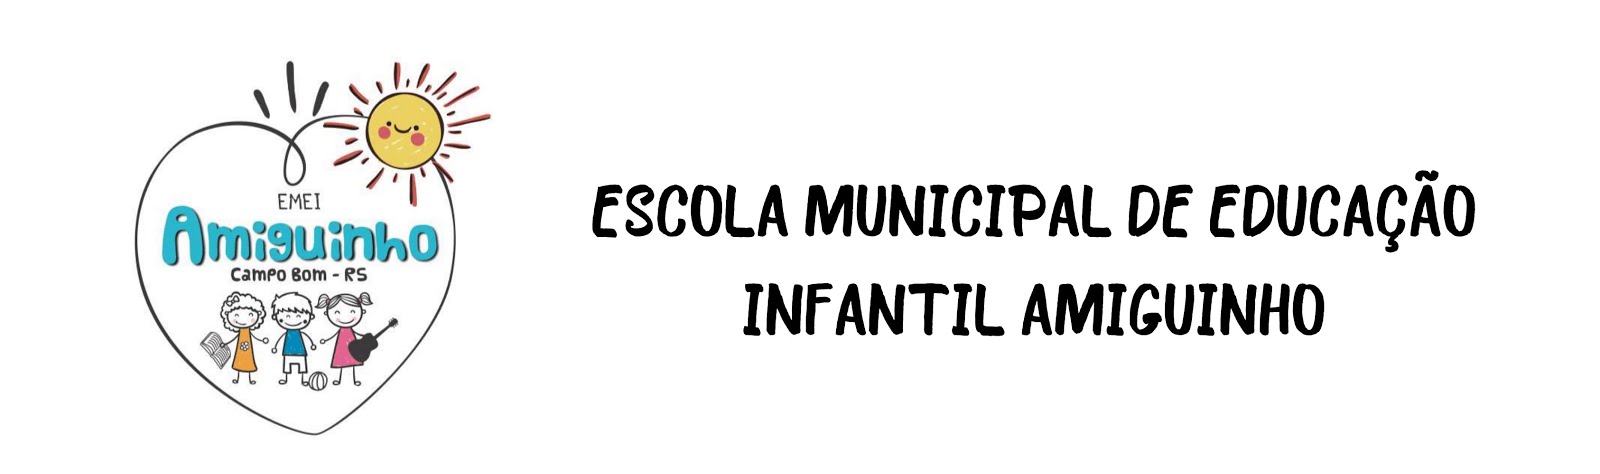 ESCOLA MUNICIPAL DE EDUCAÇÃO INFANTIL AMIGUINHO 